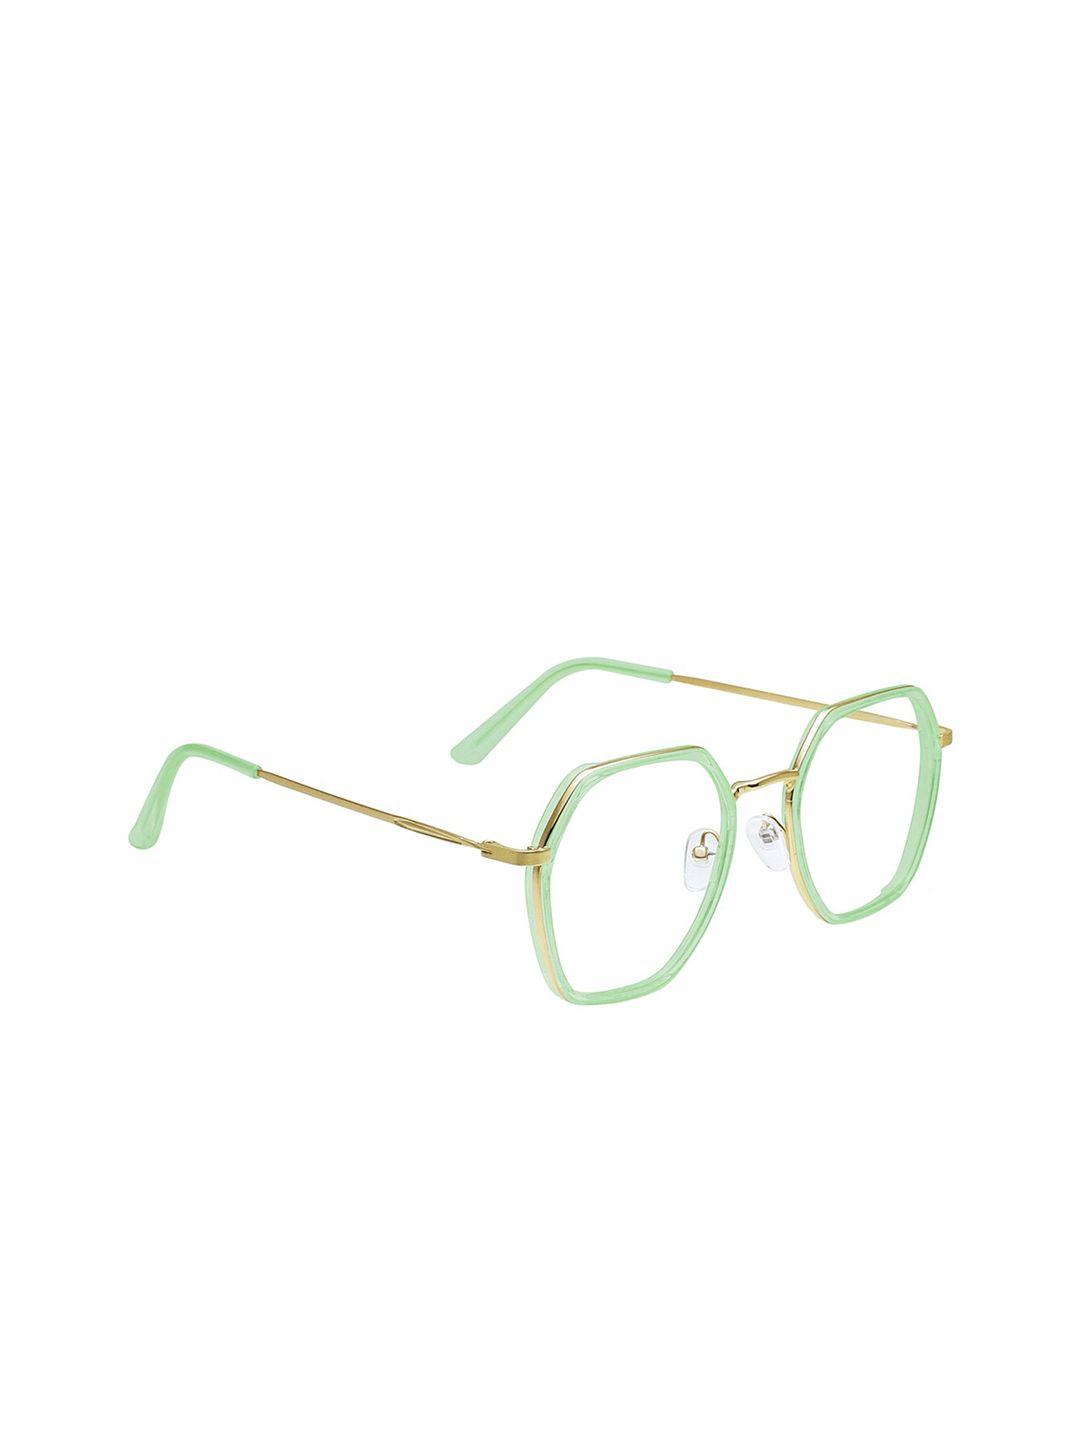 peter jones eyewear unisex green & gold-toned full rim oversized frames